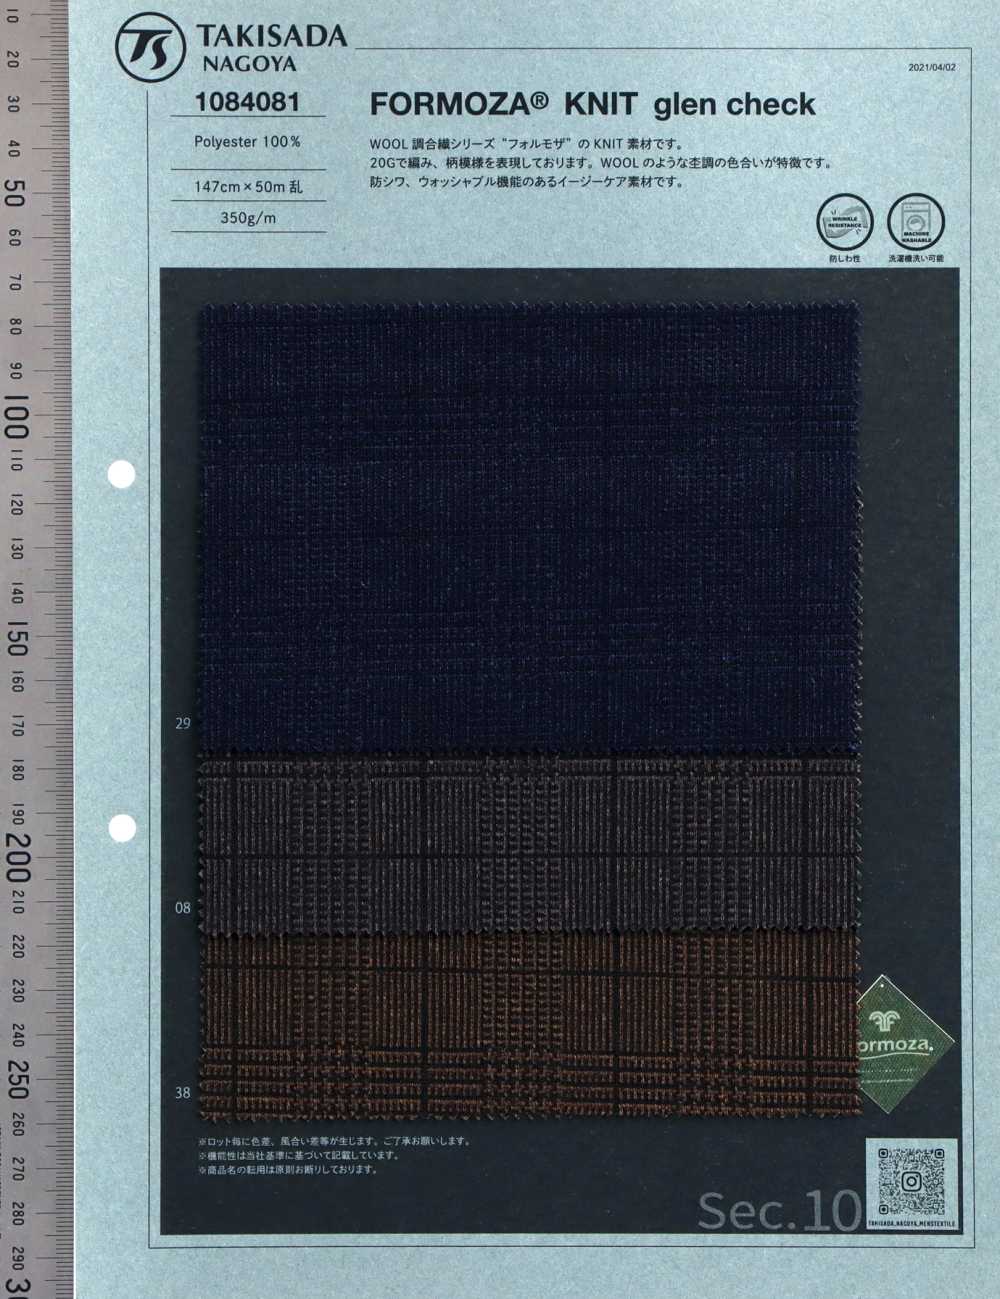 1084081 FORMOZA Jersey Glencheck[Textilgewebe] Takisada Nagoya